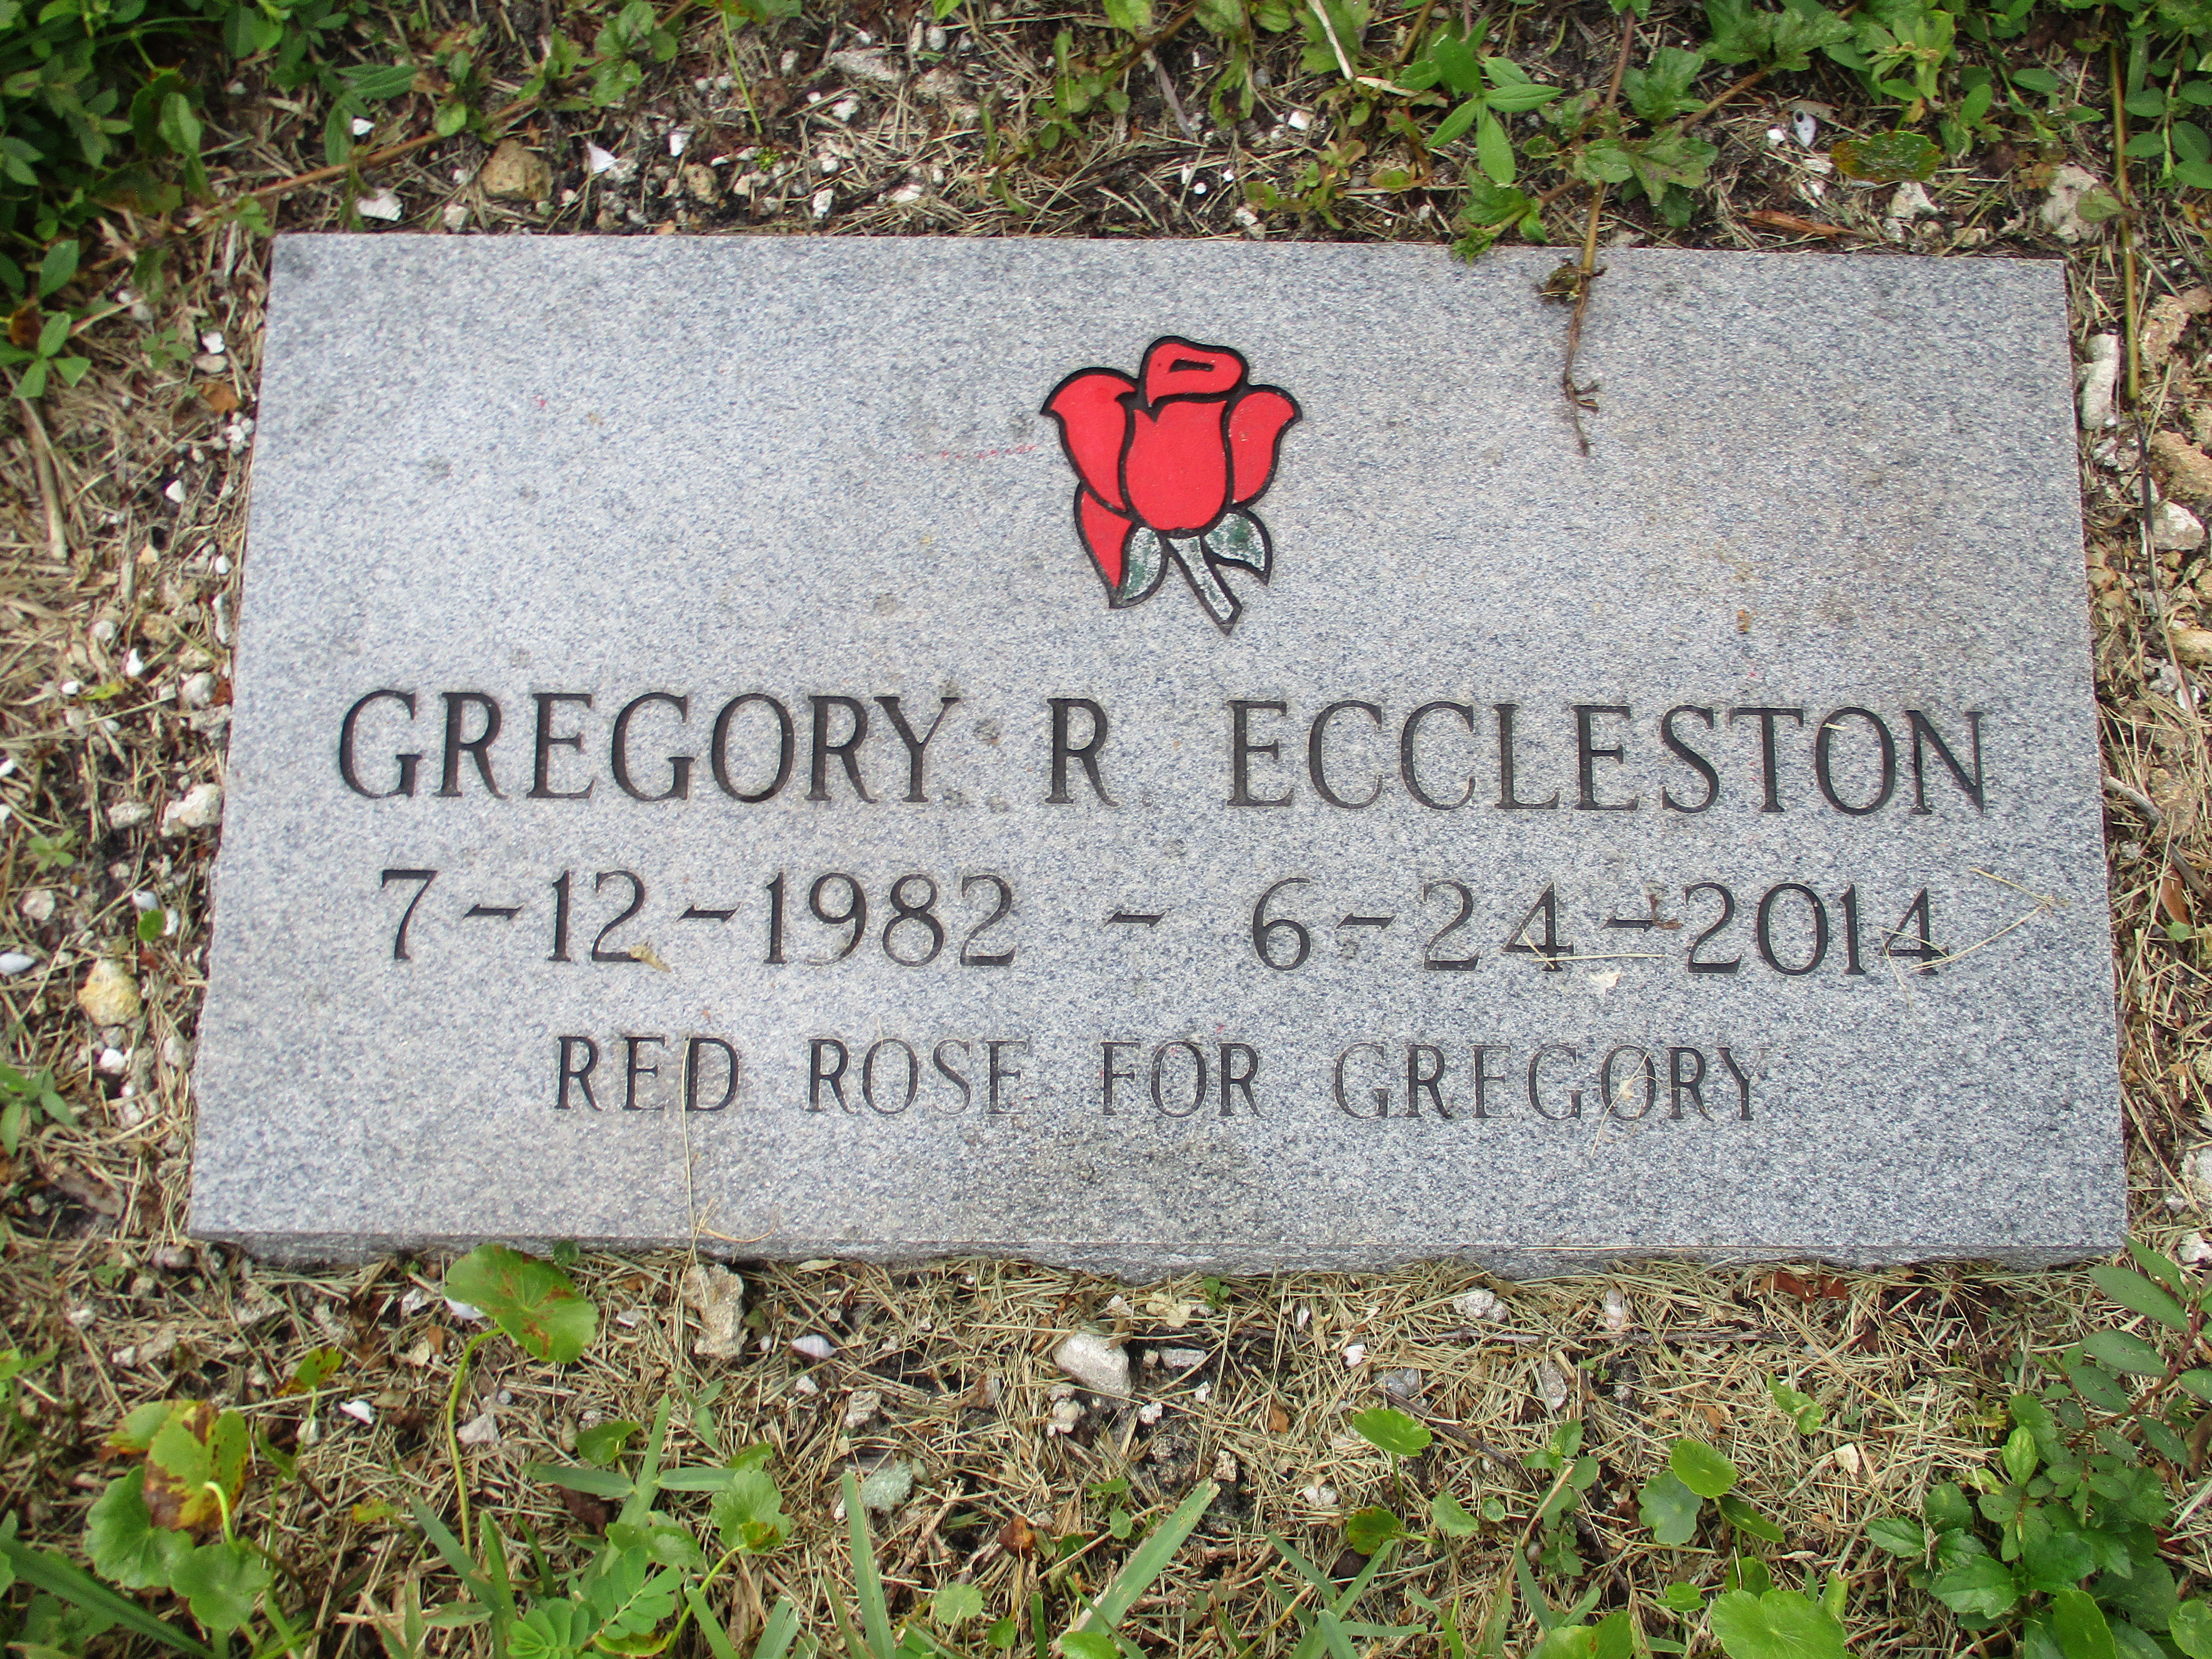 Gregory R Eccleston